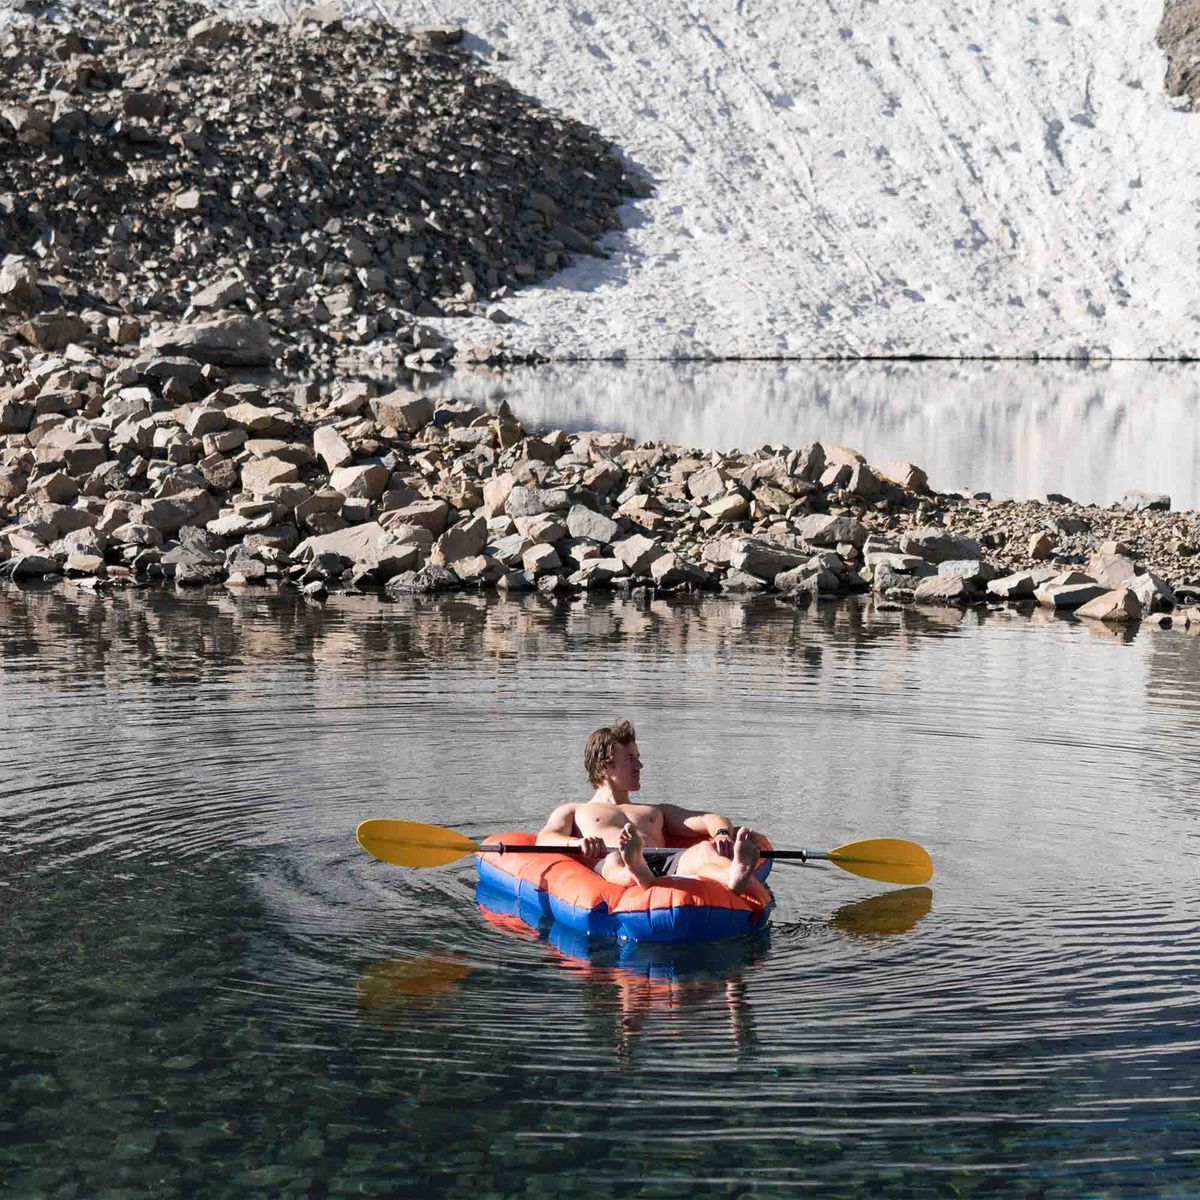 LiteWater Dinghy, Orange/Blue, Lifestyle Kayaking